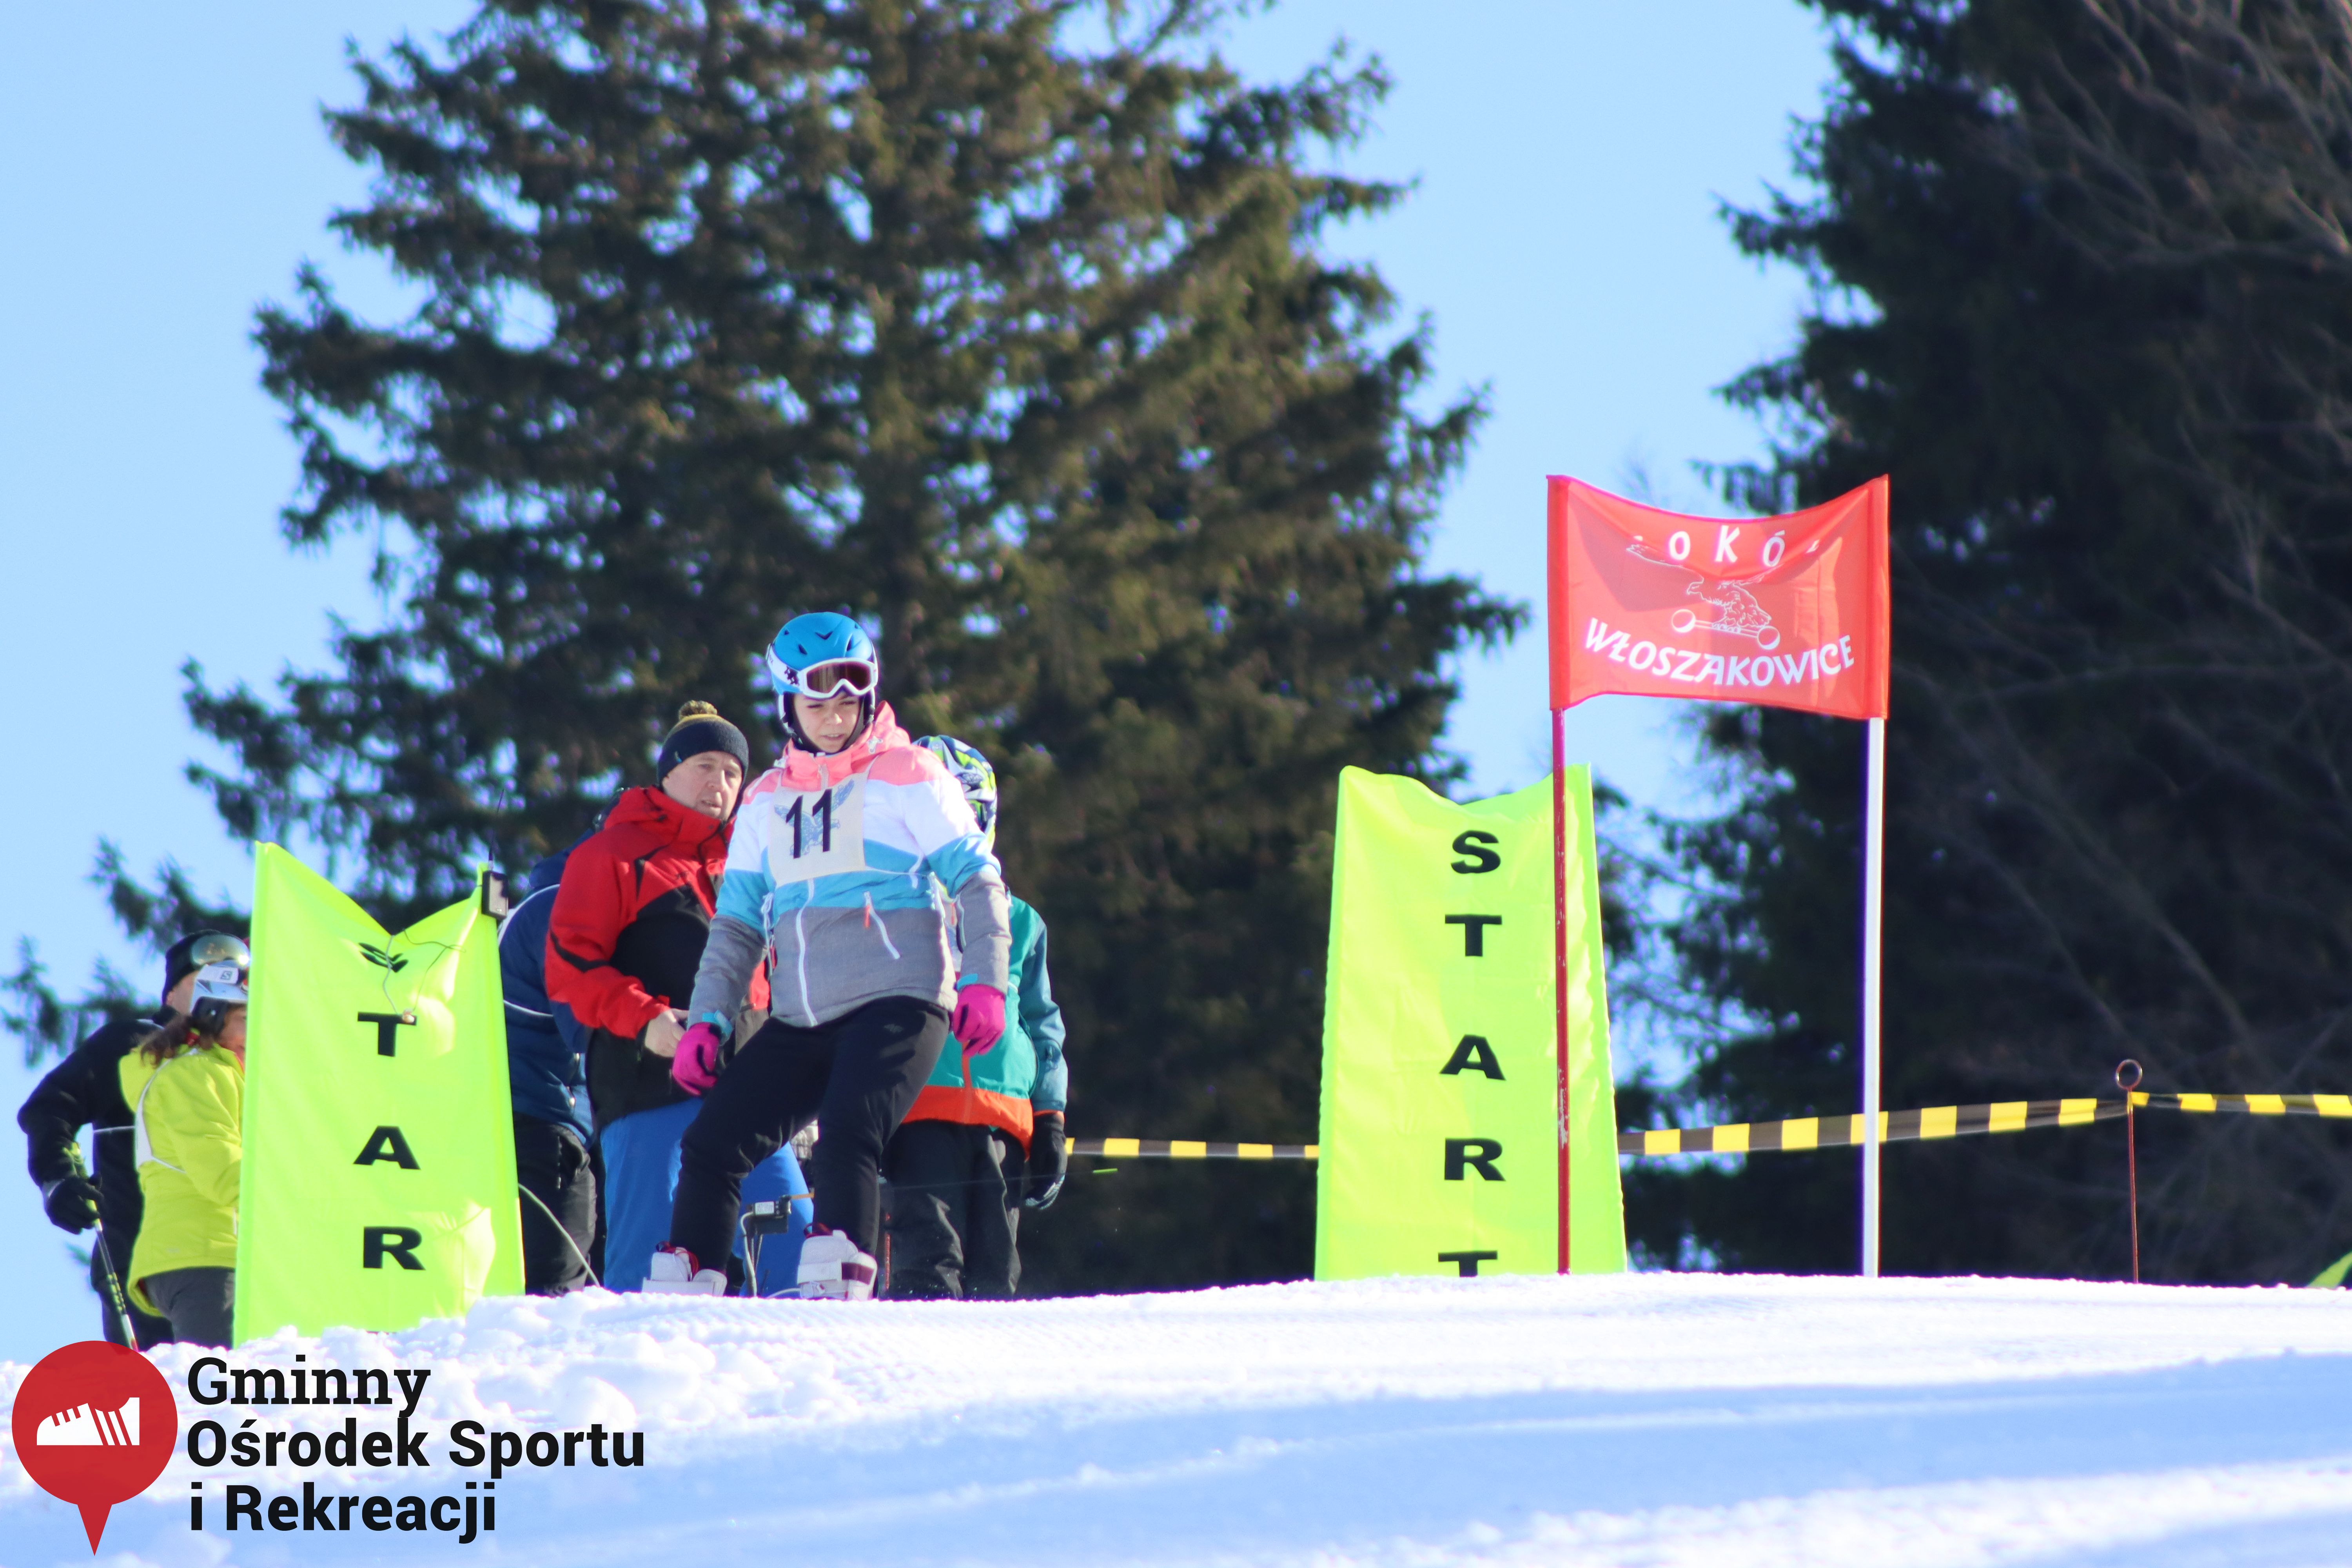 2022.02.12 - 18. Mistrzostwa Gminy Woszakowice w narciarstwie045.jpg - 1,64 MB